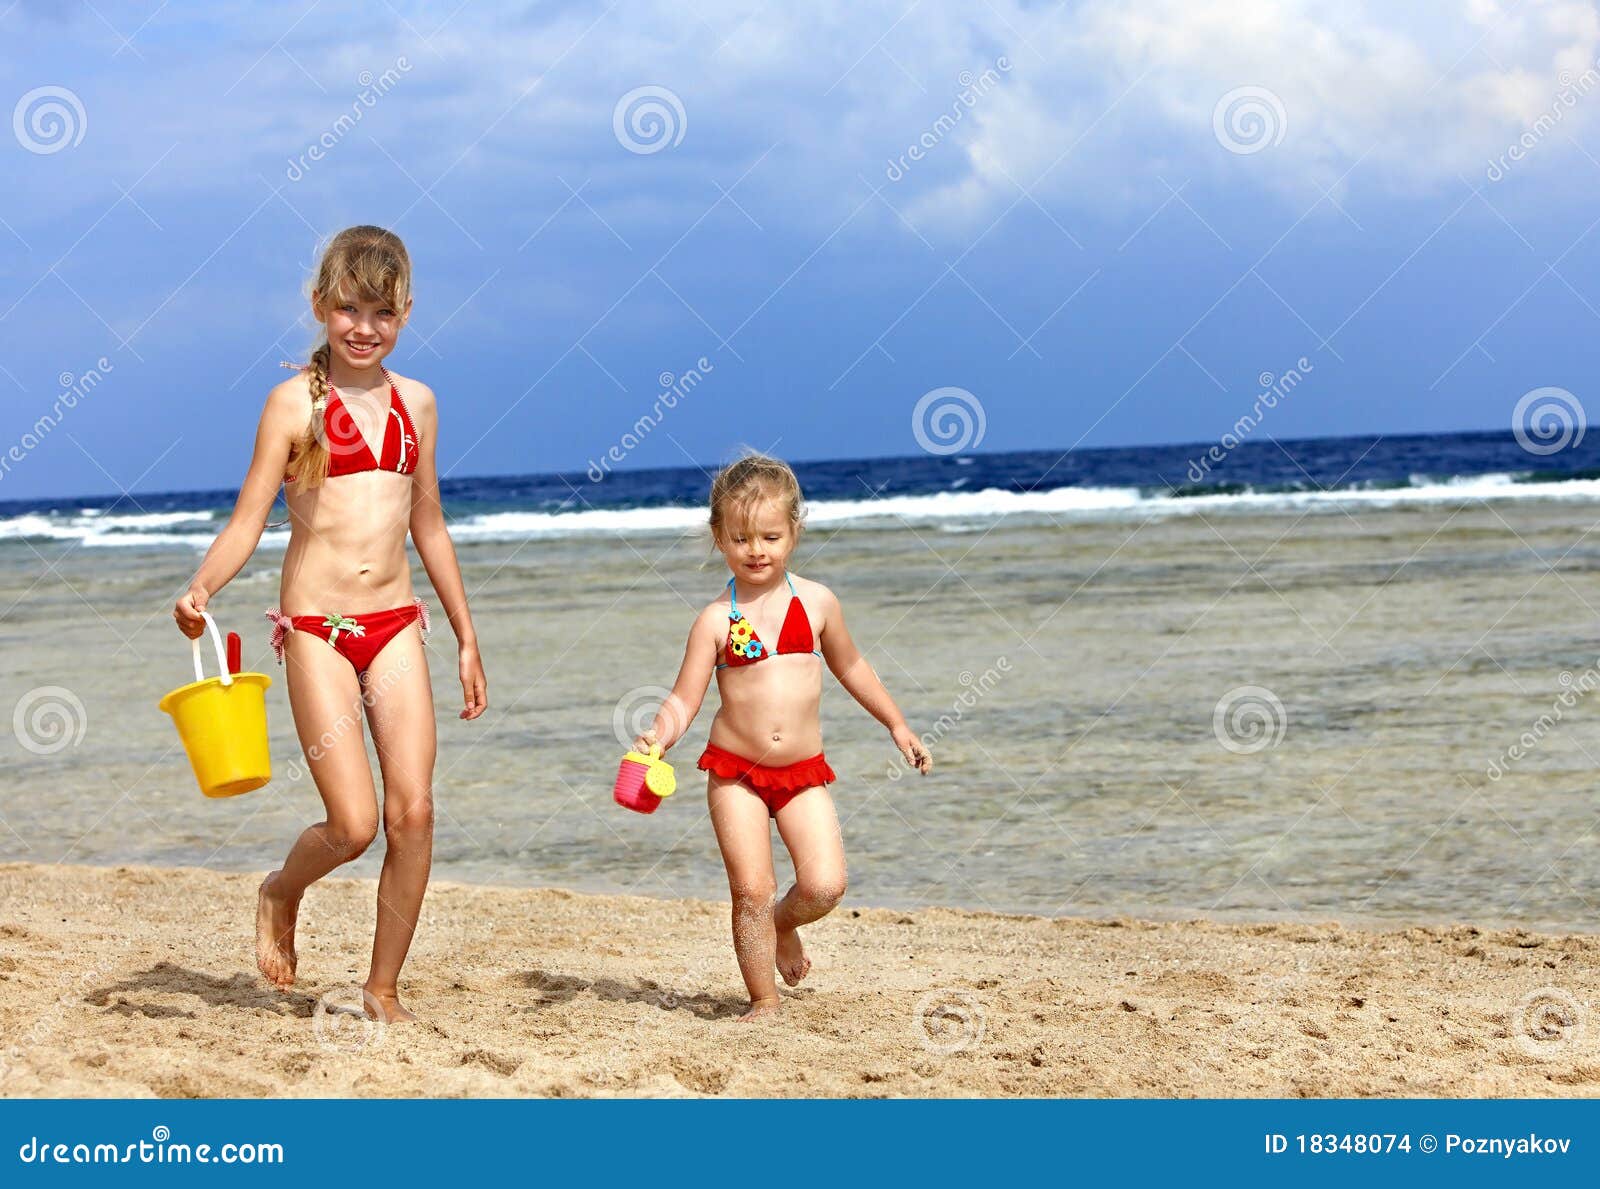 с детьми голым на пляж фото 7